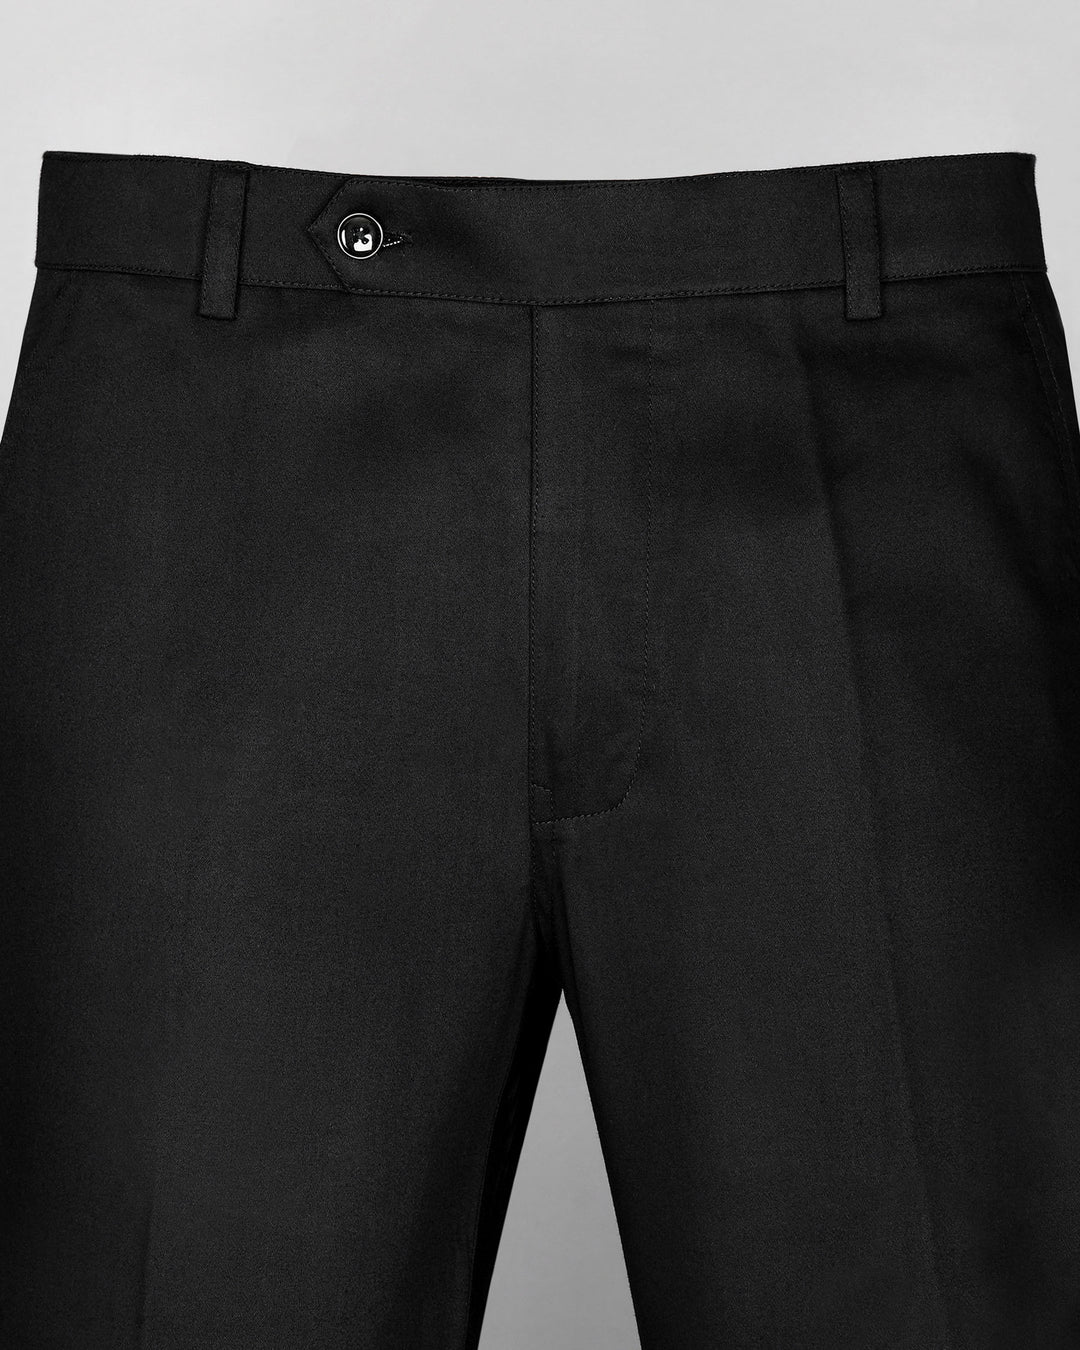 YOGI Formal Pants Combo pack of Two Mens Trousers Regular Fit